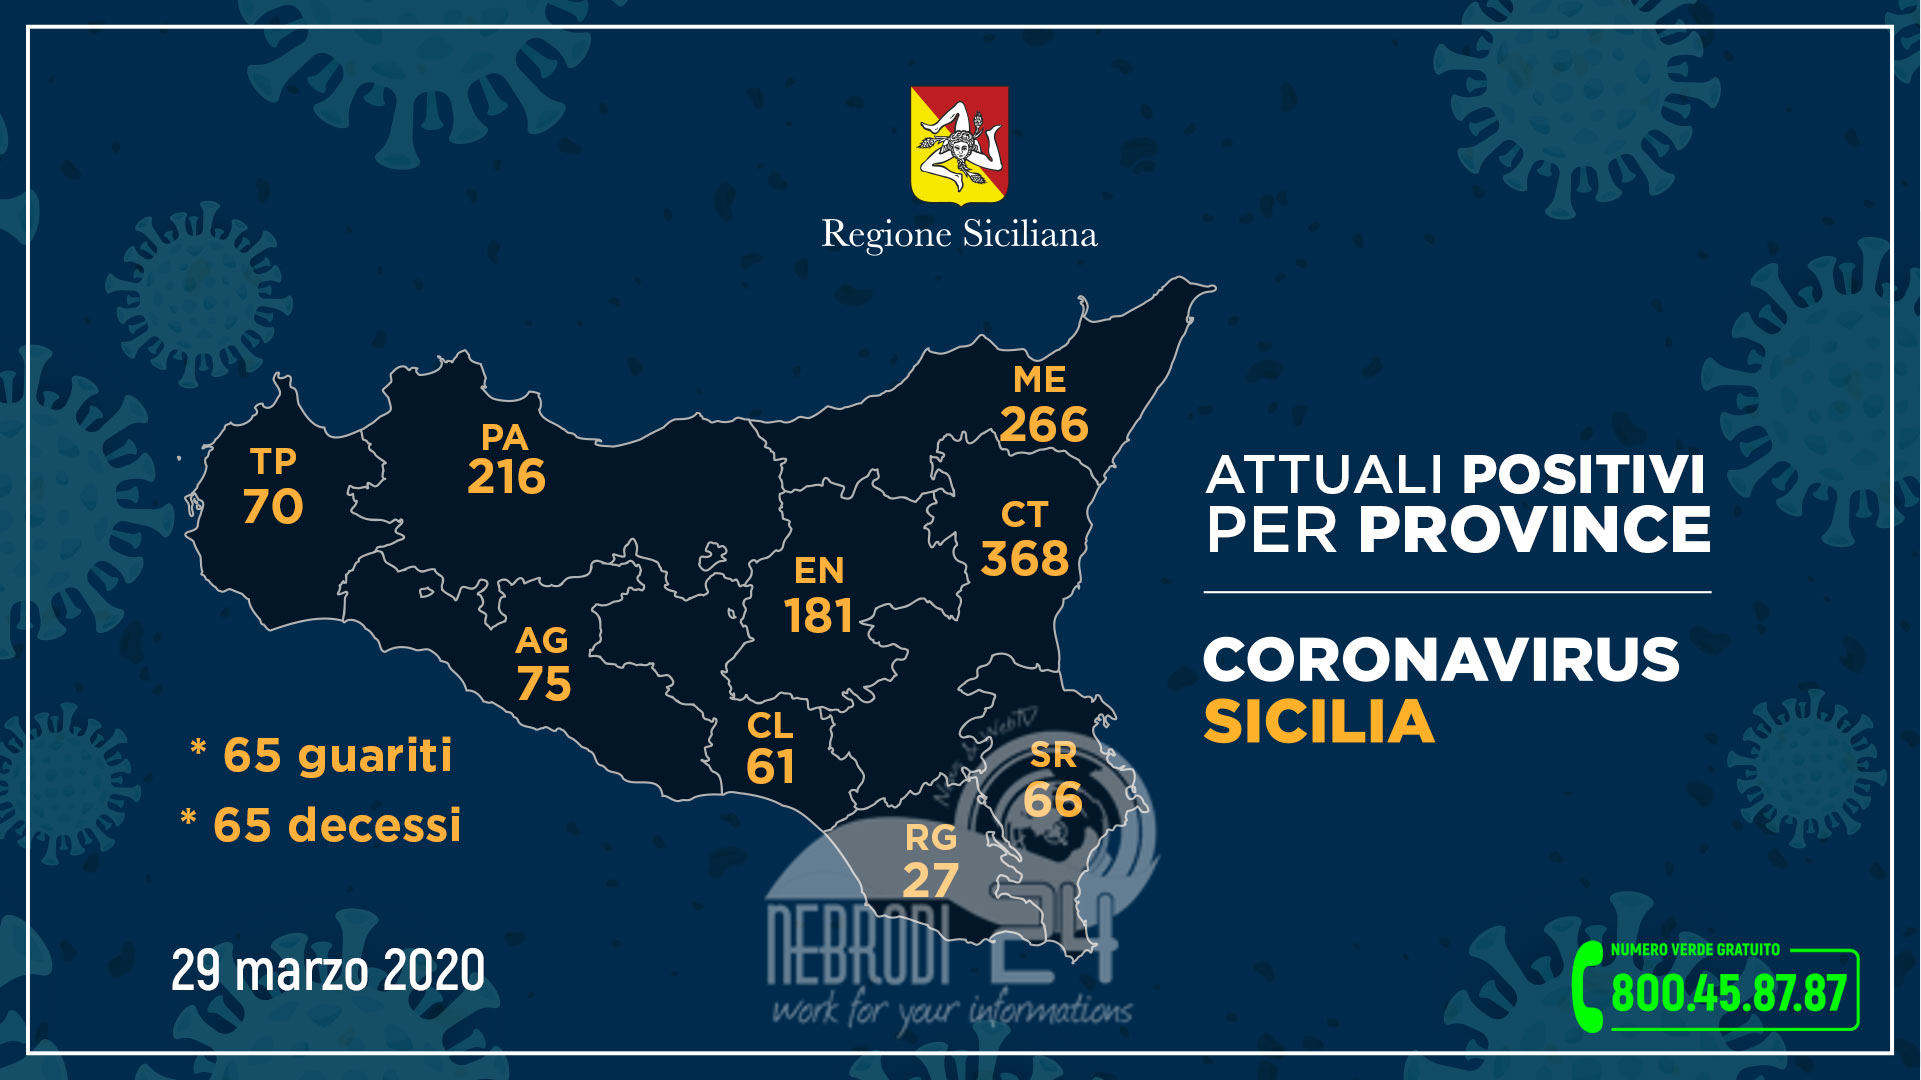 Coronavirus: l’aggiornamento in Sicilia, 1.330 attuali positivi e 65 guariti (+88 rispetto a ieri)